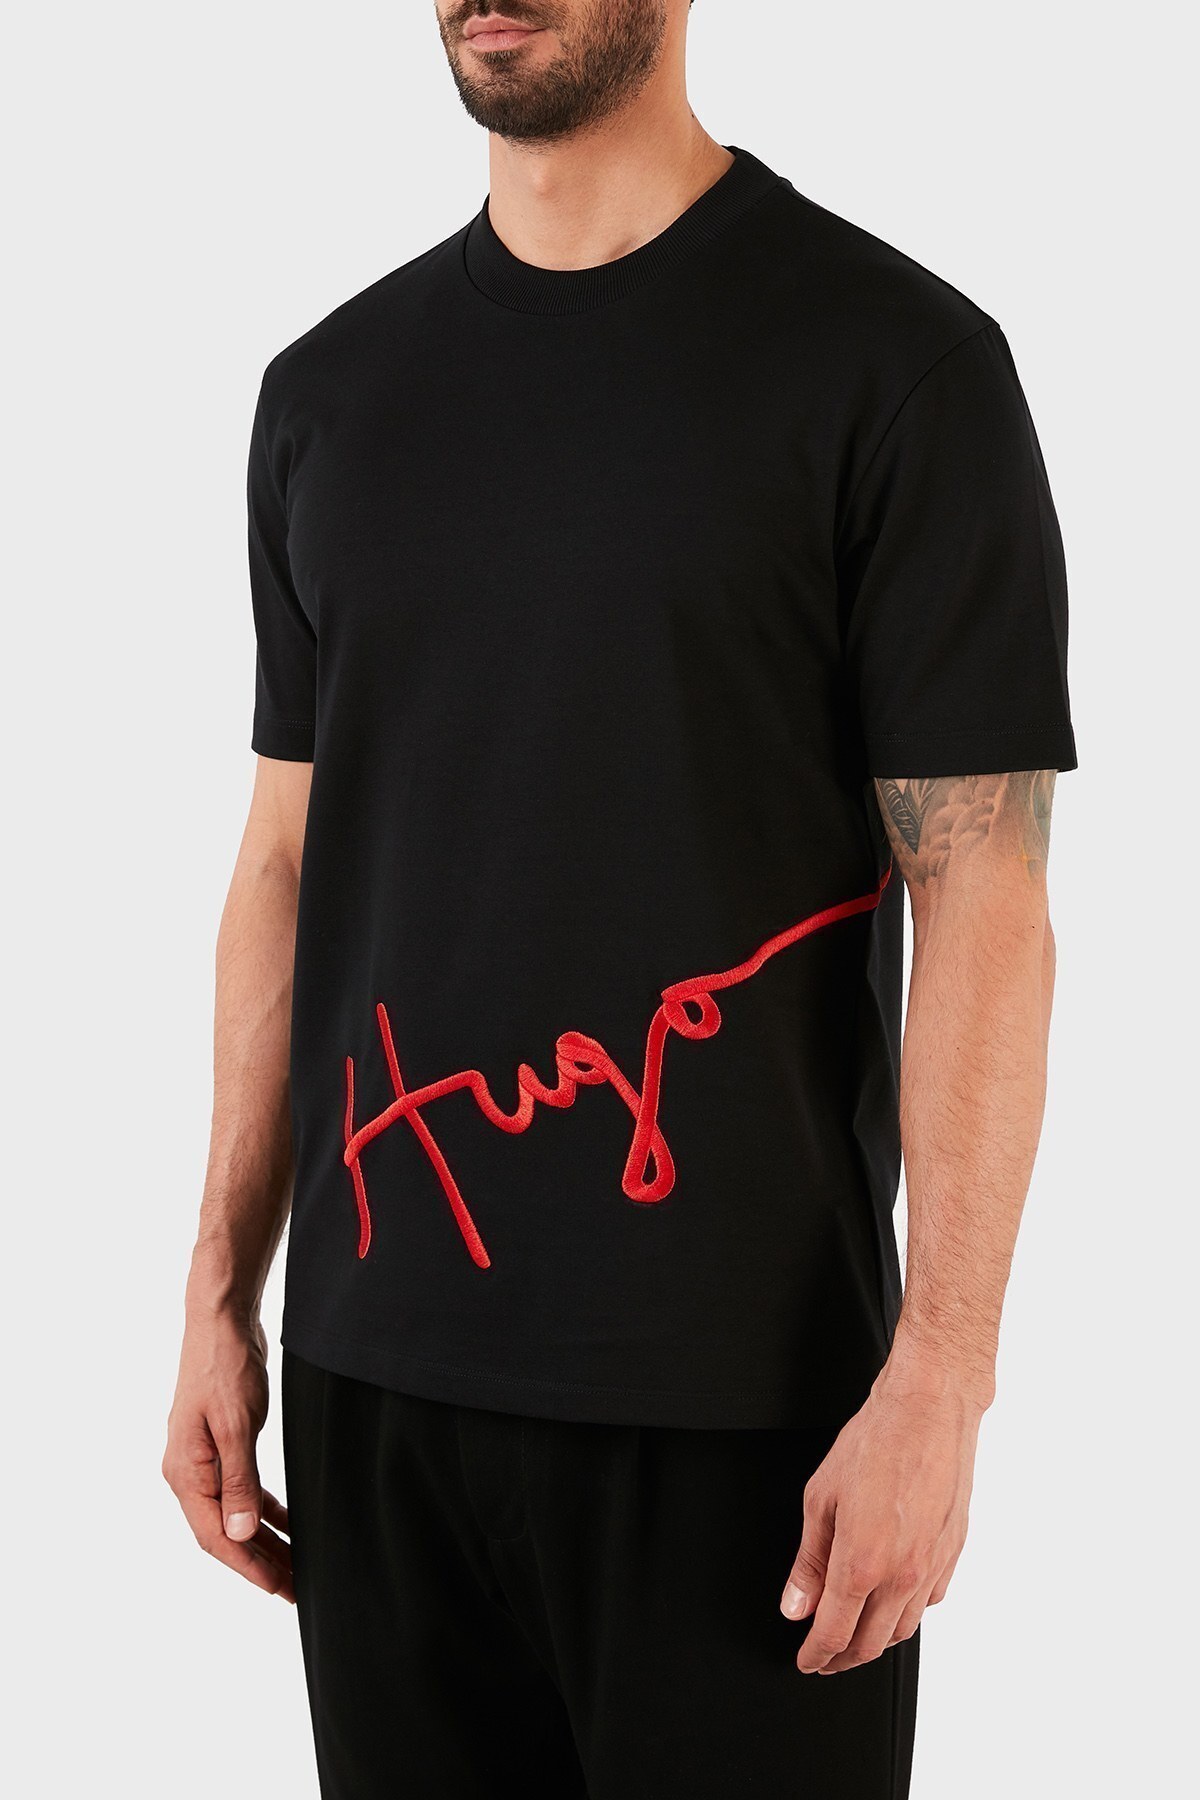 Hugo Boss Erkek T Shirt 50456164 001 SİYAH